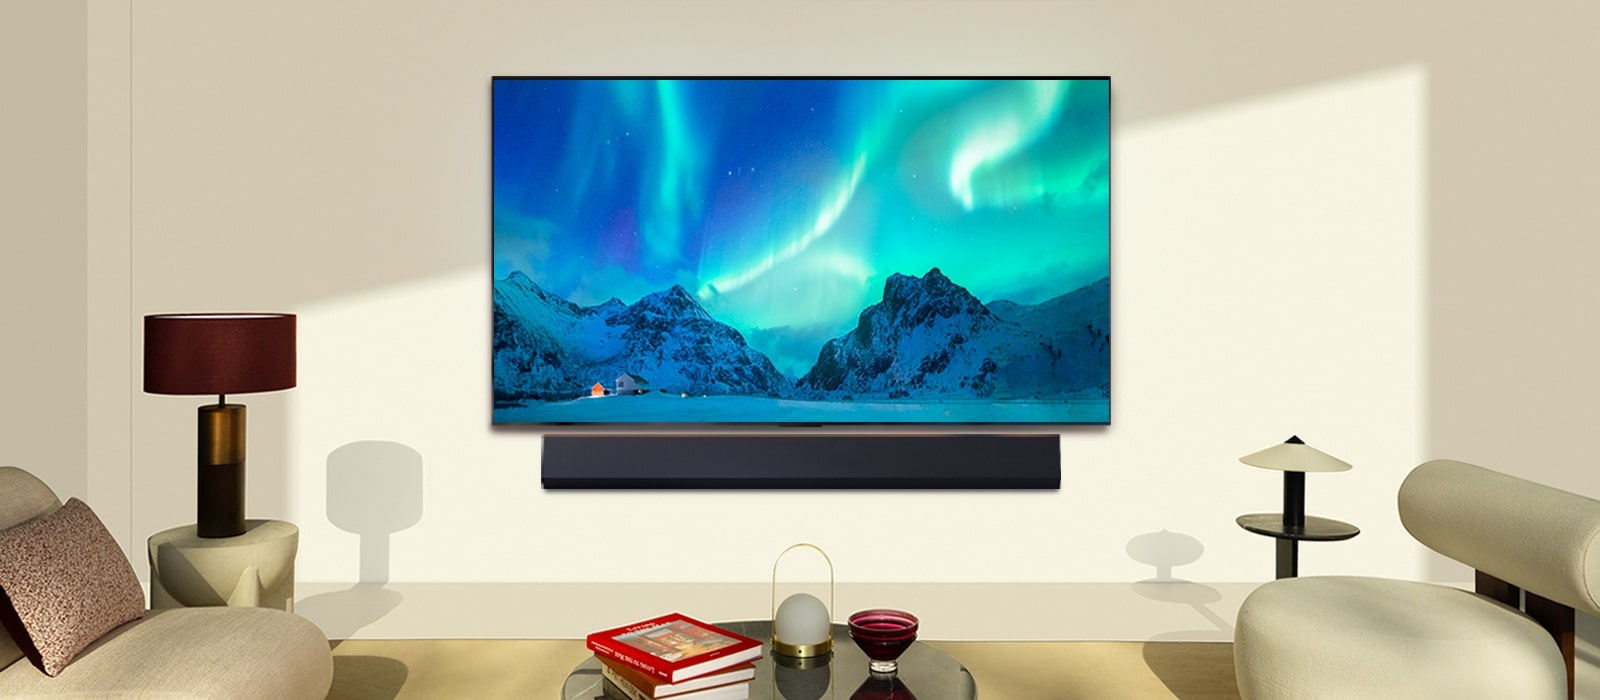 Le téléviseur OLED de LG et la barre de son de LG dans une pièce moderne en plein jour. Des aurores boréales s’affichent à l’écran avec les niveaux de luminosité idéaux.